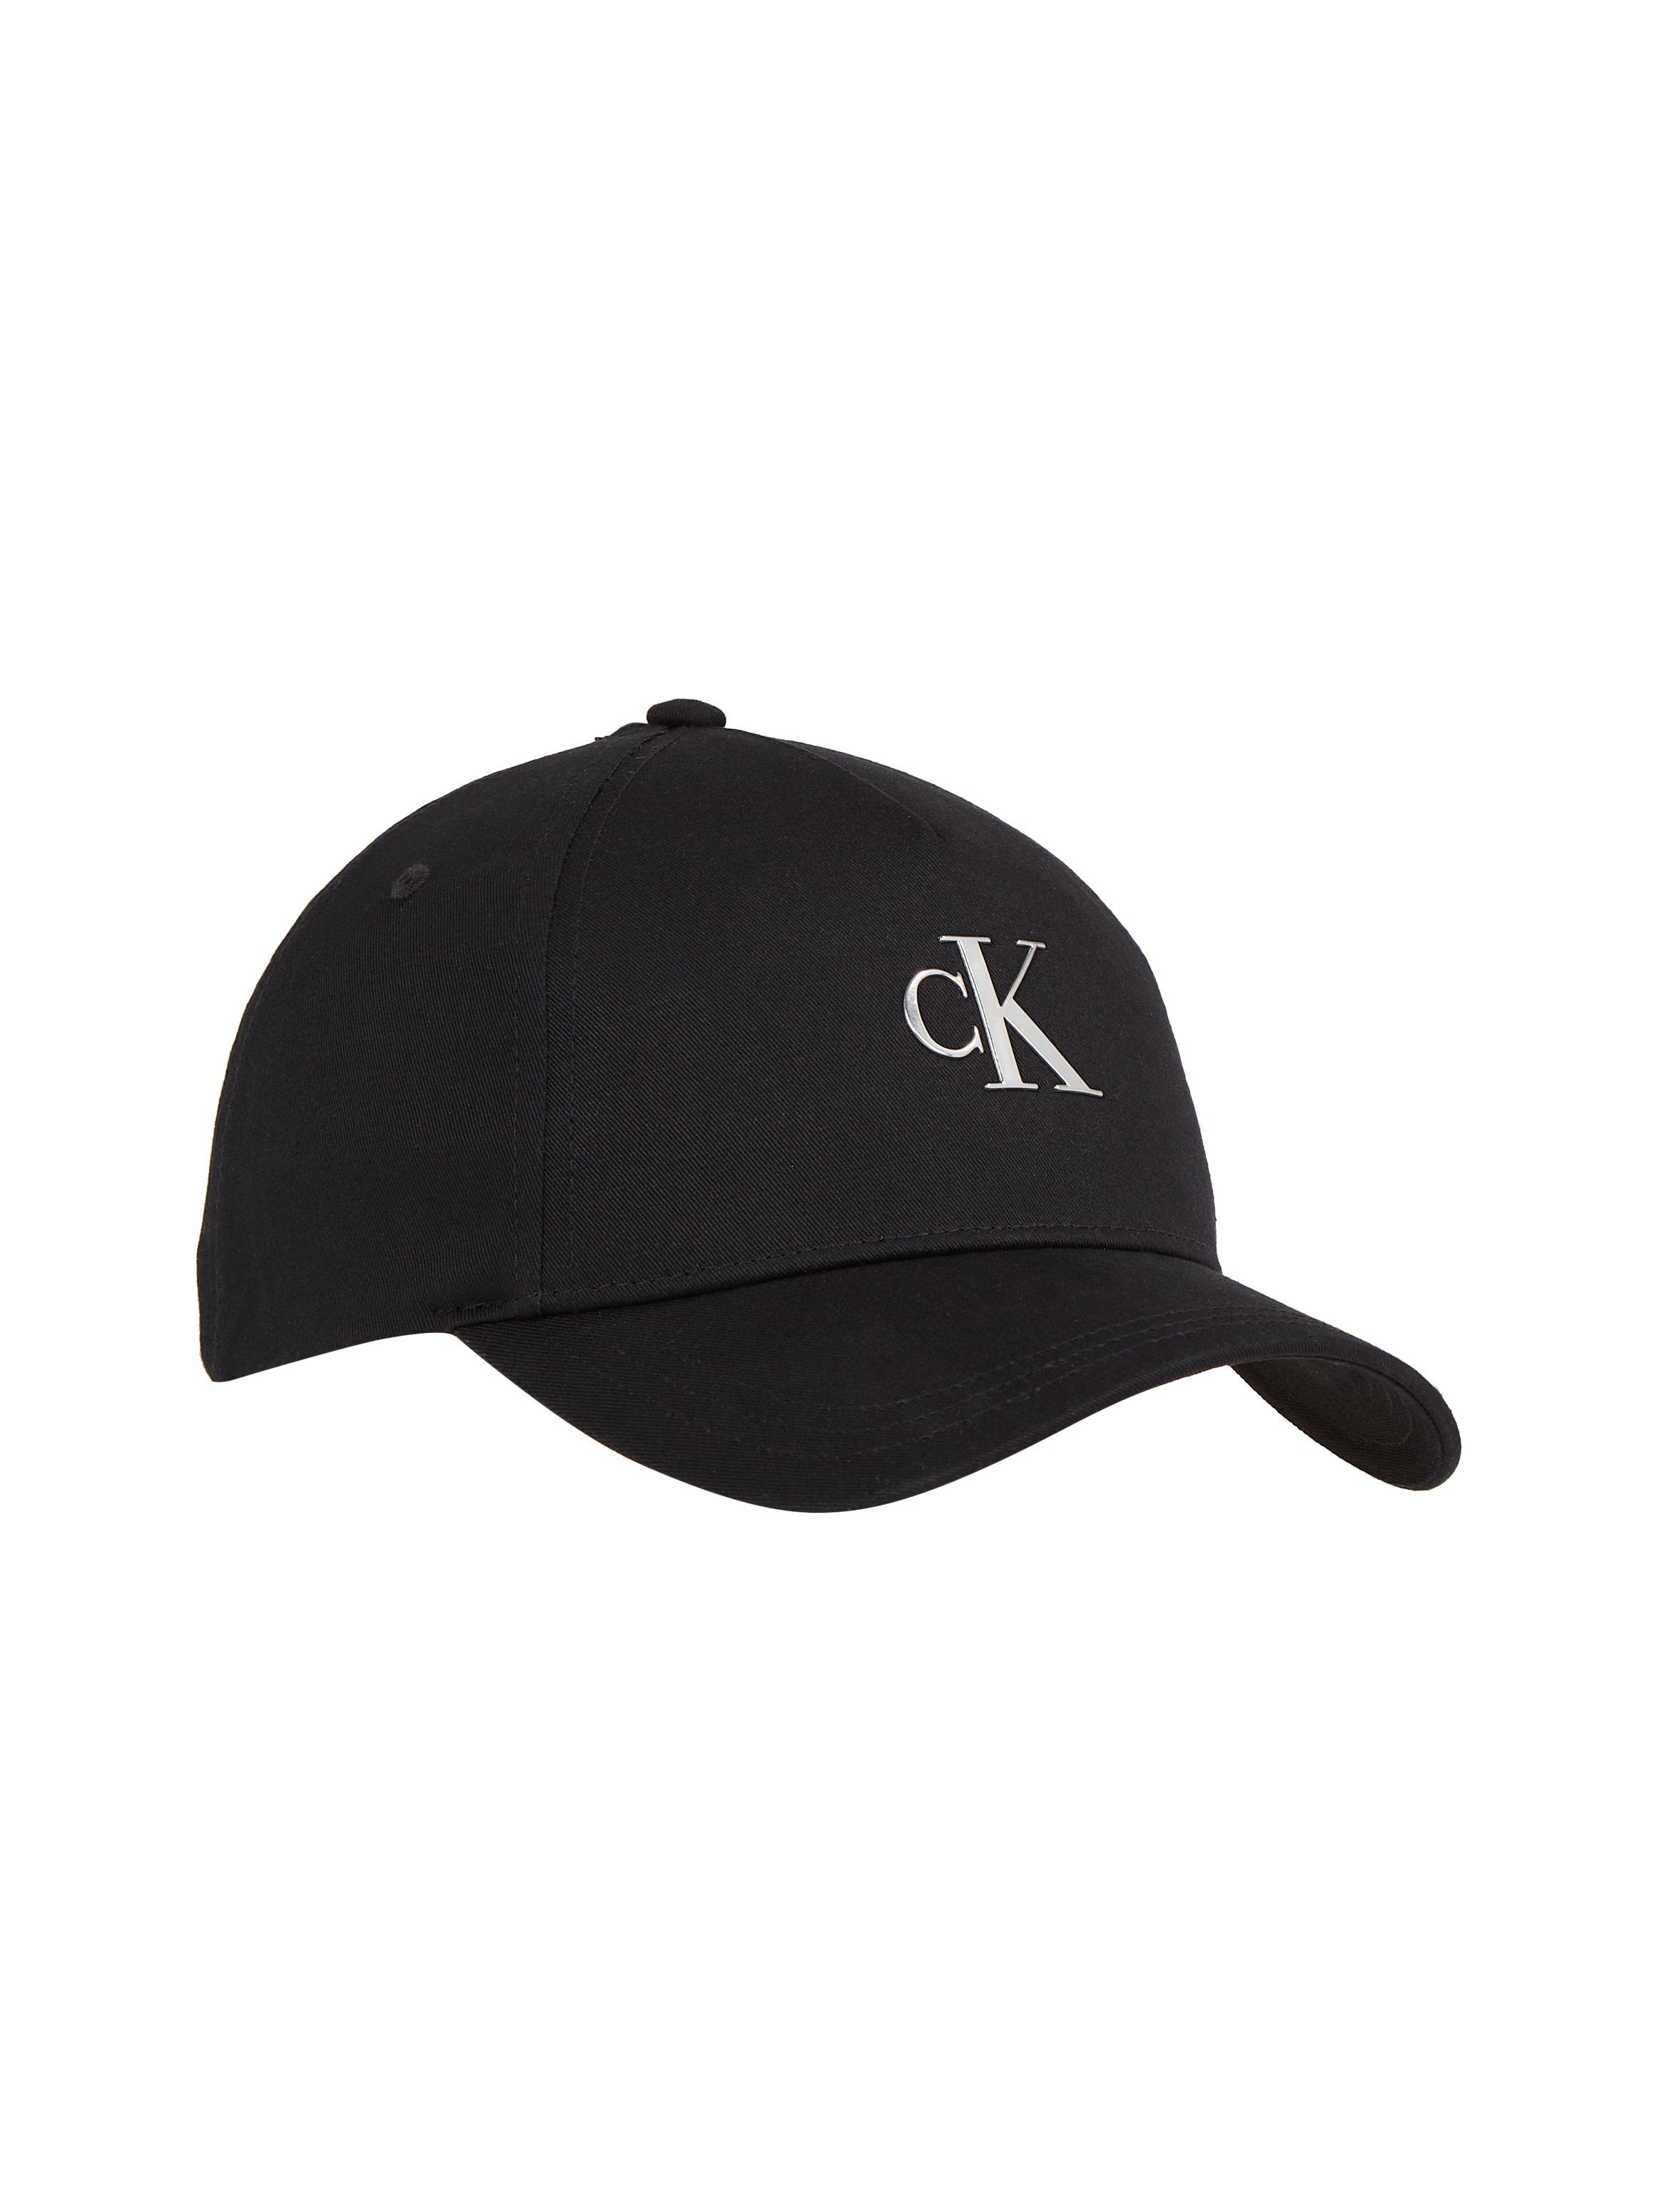 Calvin Klein Caps für Herren online kaufen » CK Kappen | OTTO